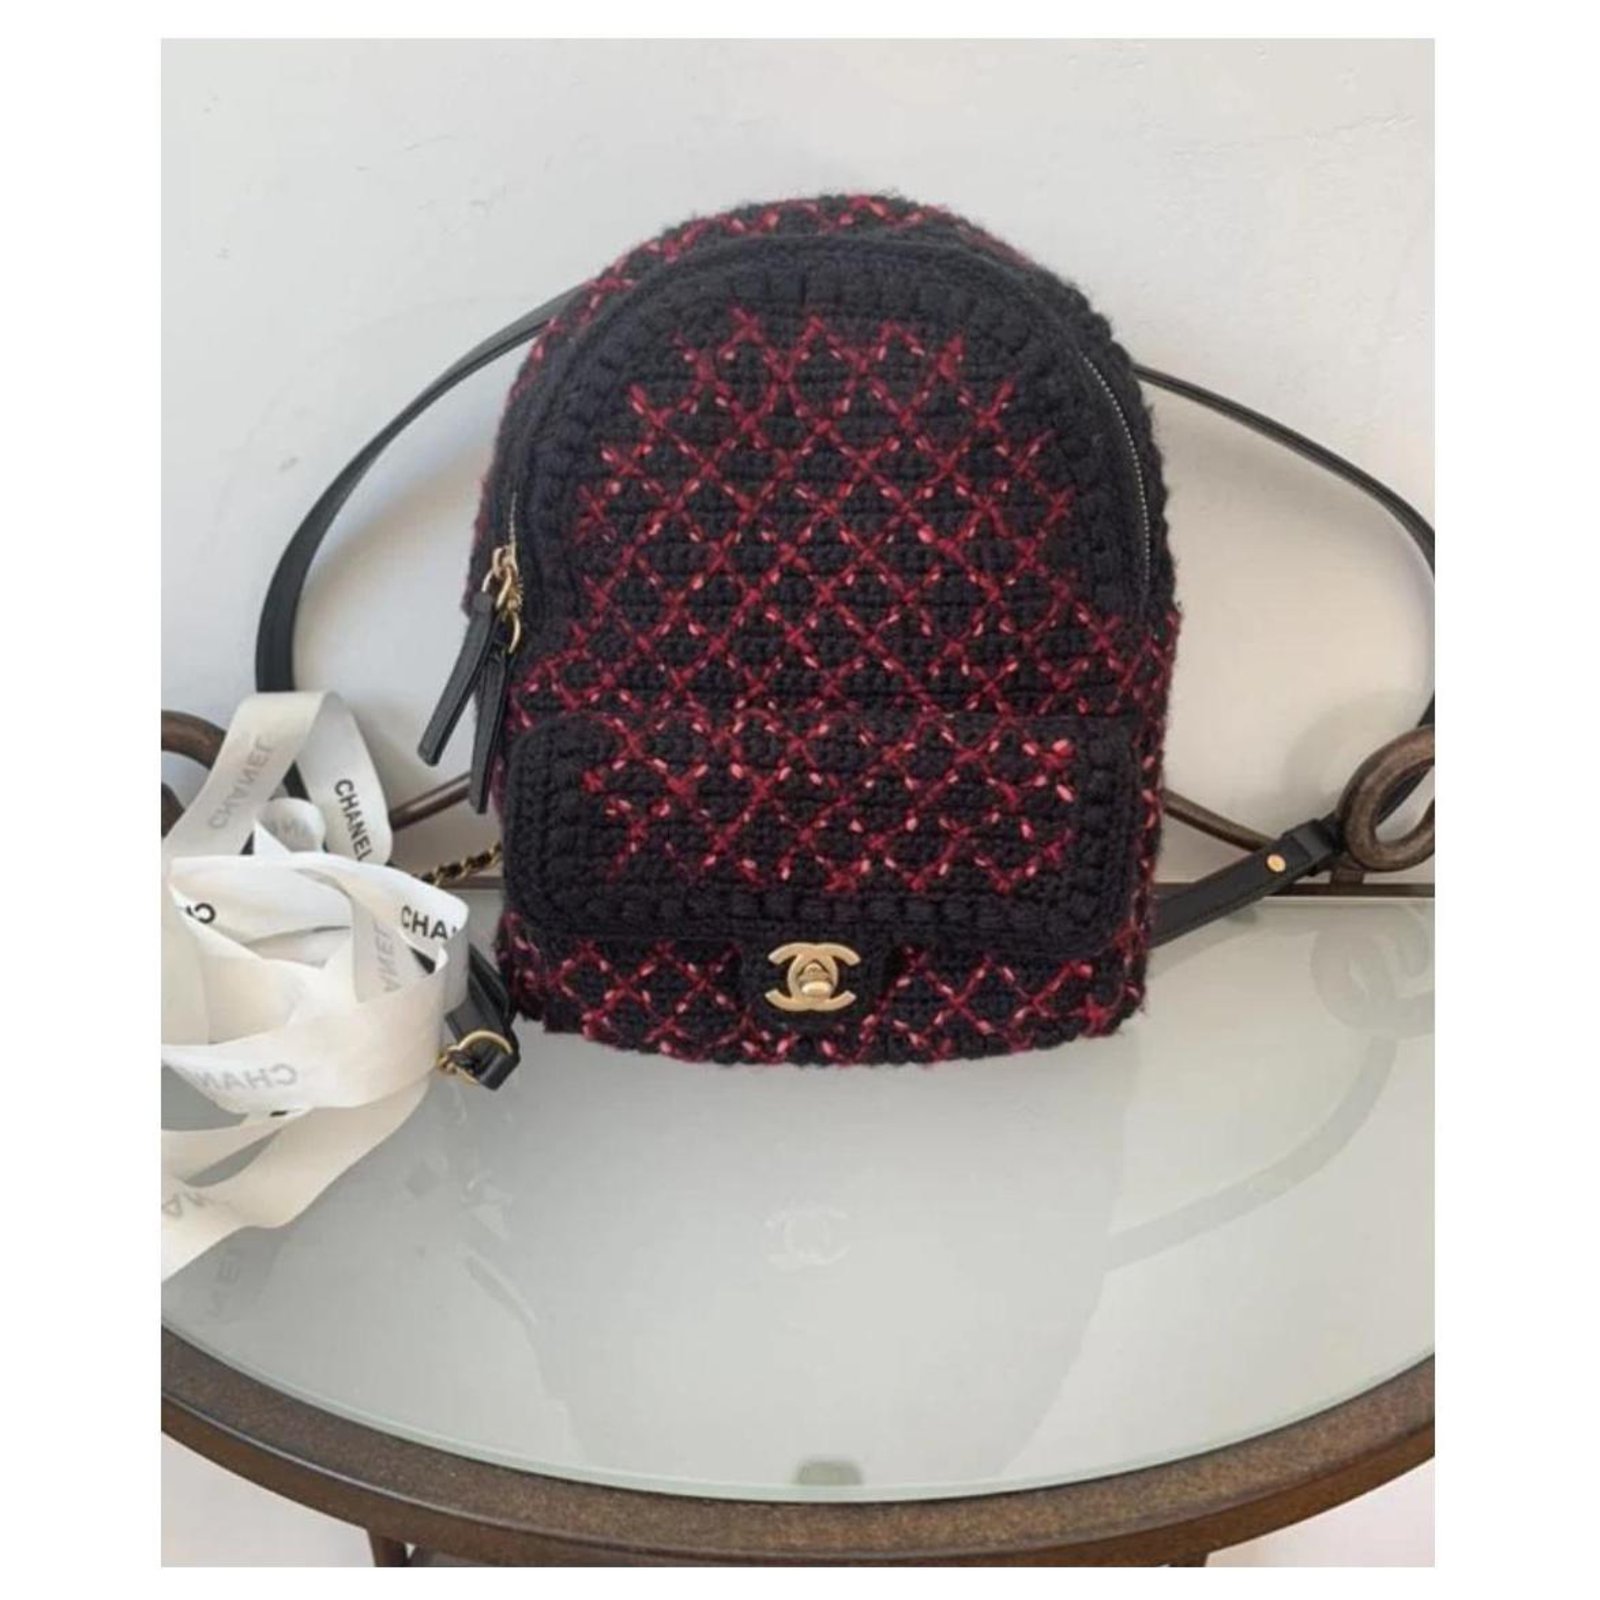 Chanel backpack /--/blk - Gem